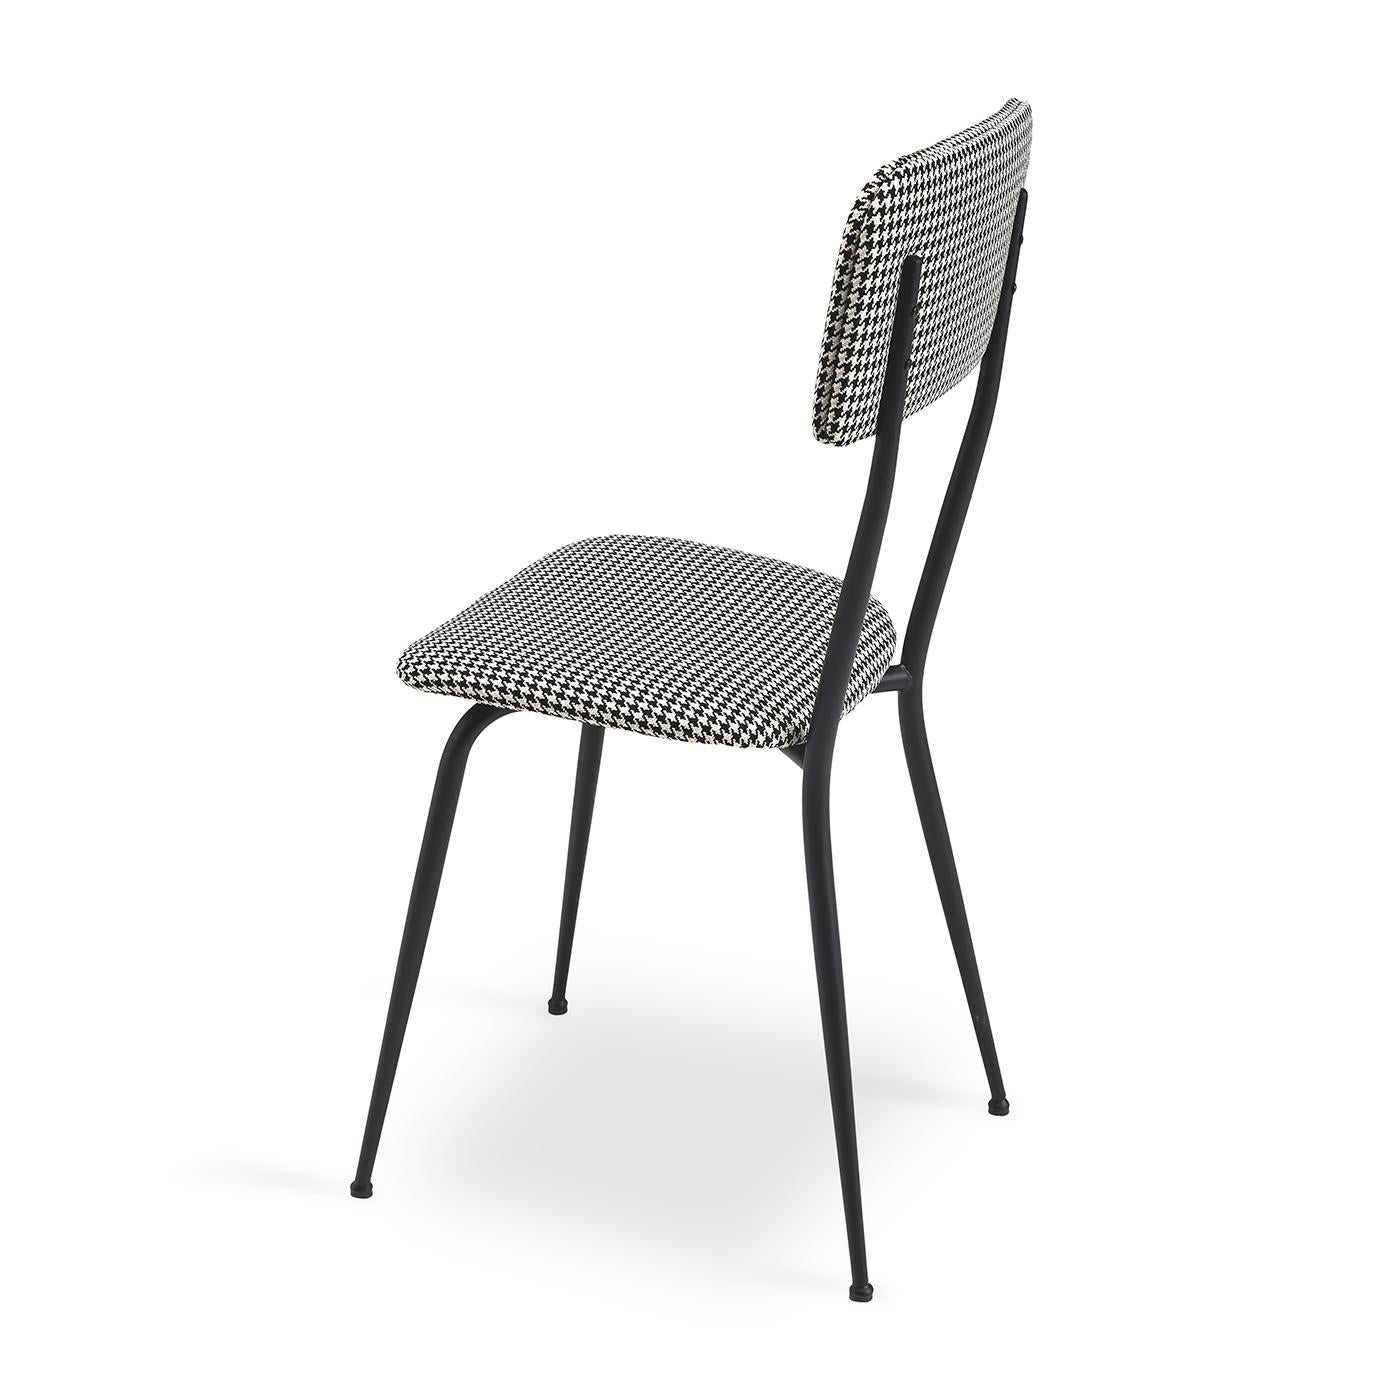 Der Stuhl Miss Ava 2 vereint modernes und traditionelles Design in einem mühelos eleganten Entwurf. Klare Metallbeine mit schwarzer Lackierung sorgen für eine moderne Ausstrahlung, während die gepolsterte Rückenlehne und Sitzfläche ein klassisches